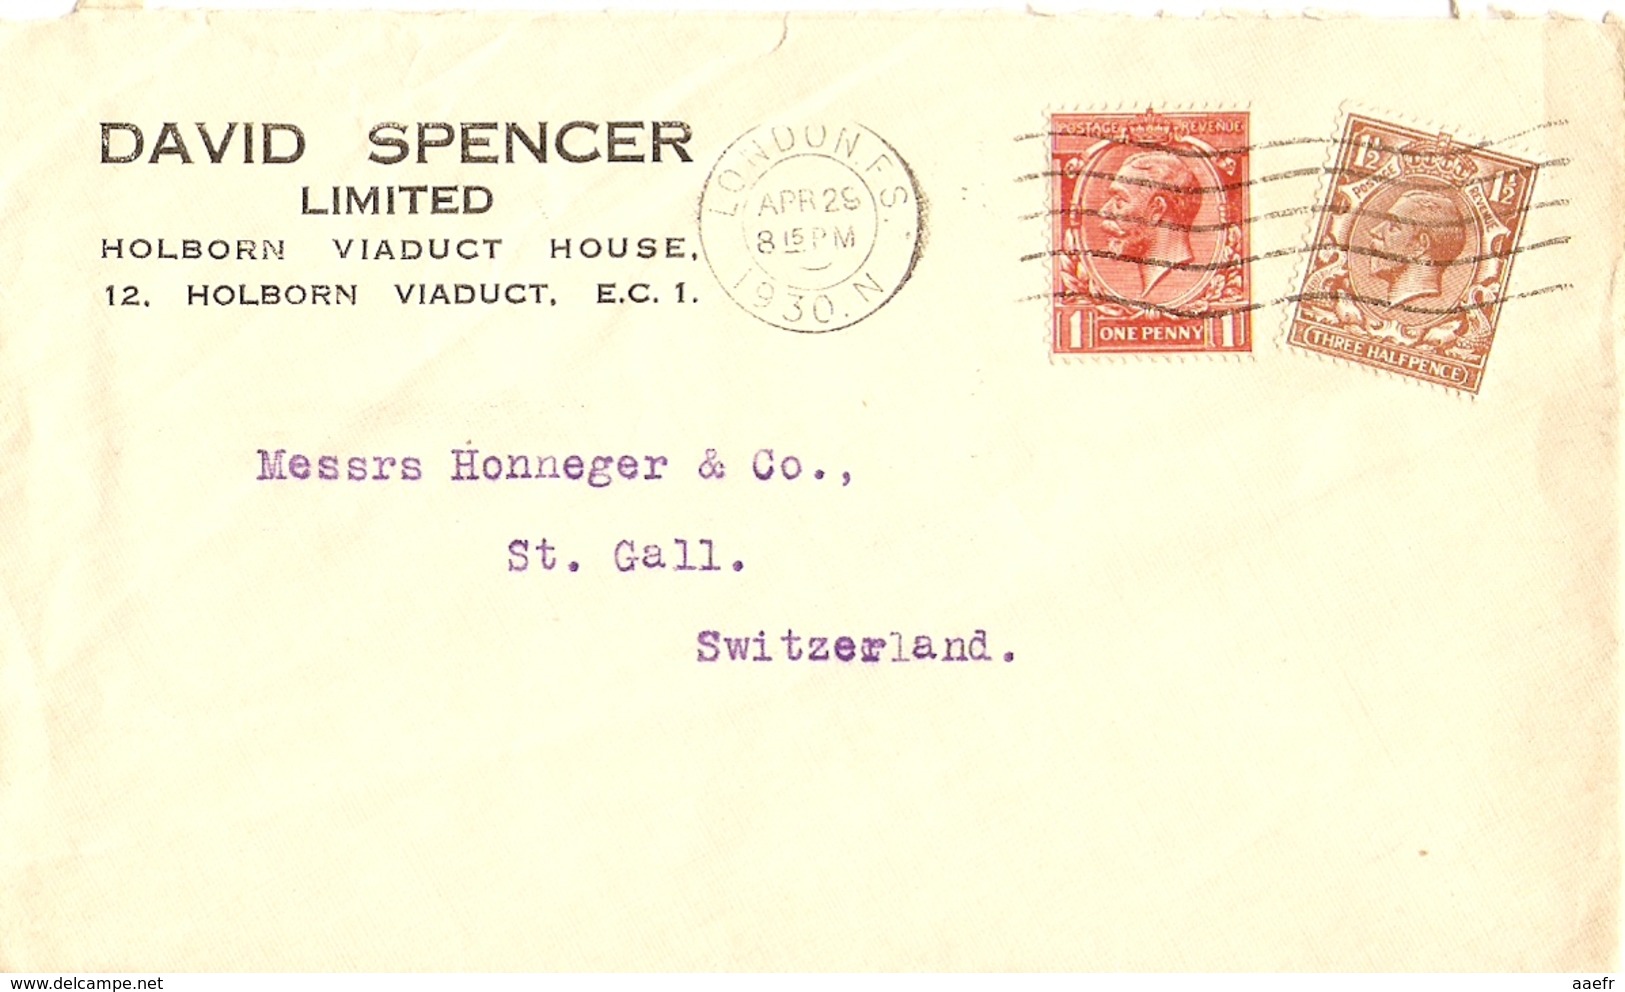 Grande Bretagne 1930 - Enveloppe Commerciale De David Spencer Ltd/Londres à St Gall/Suisse - Lettres & Documents